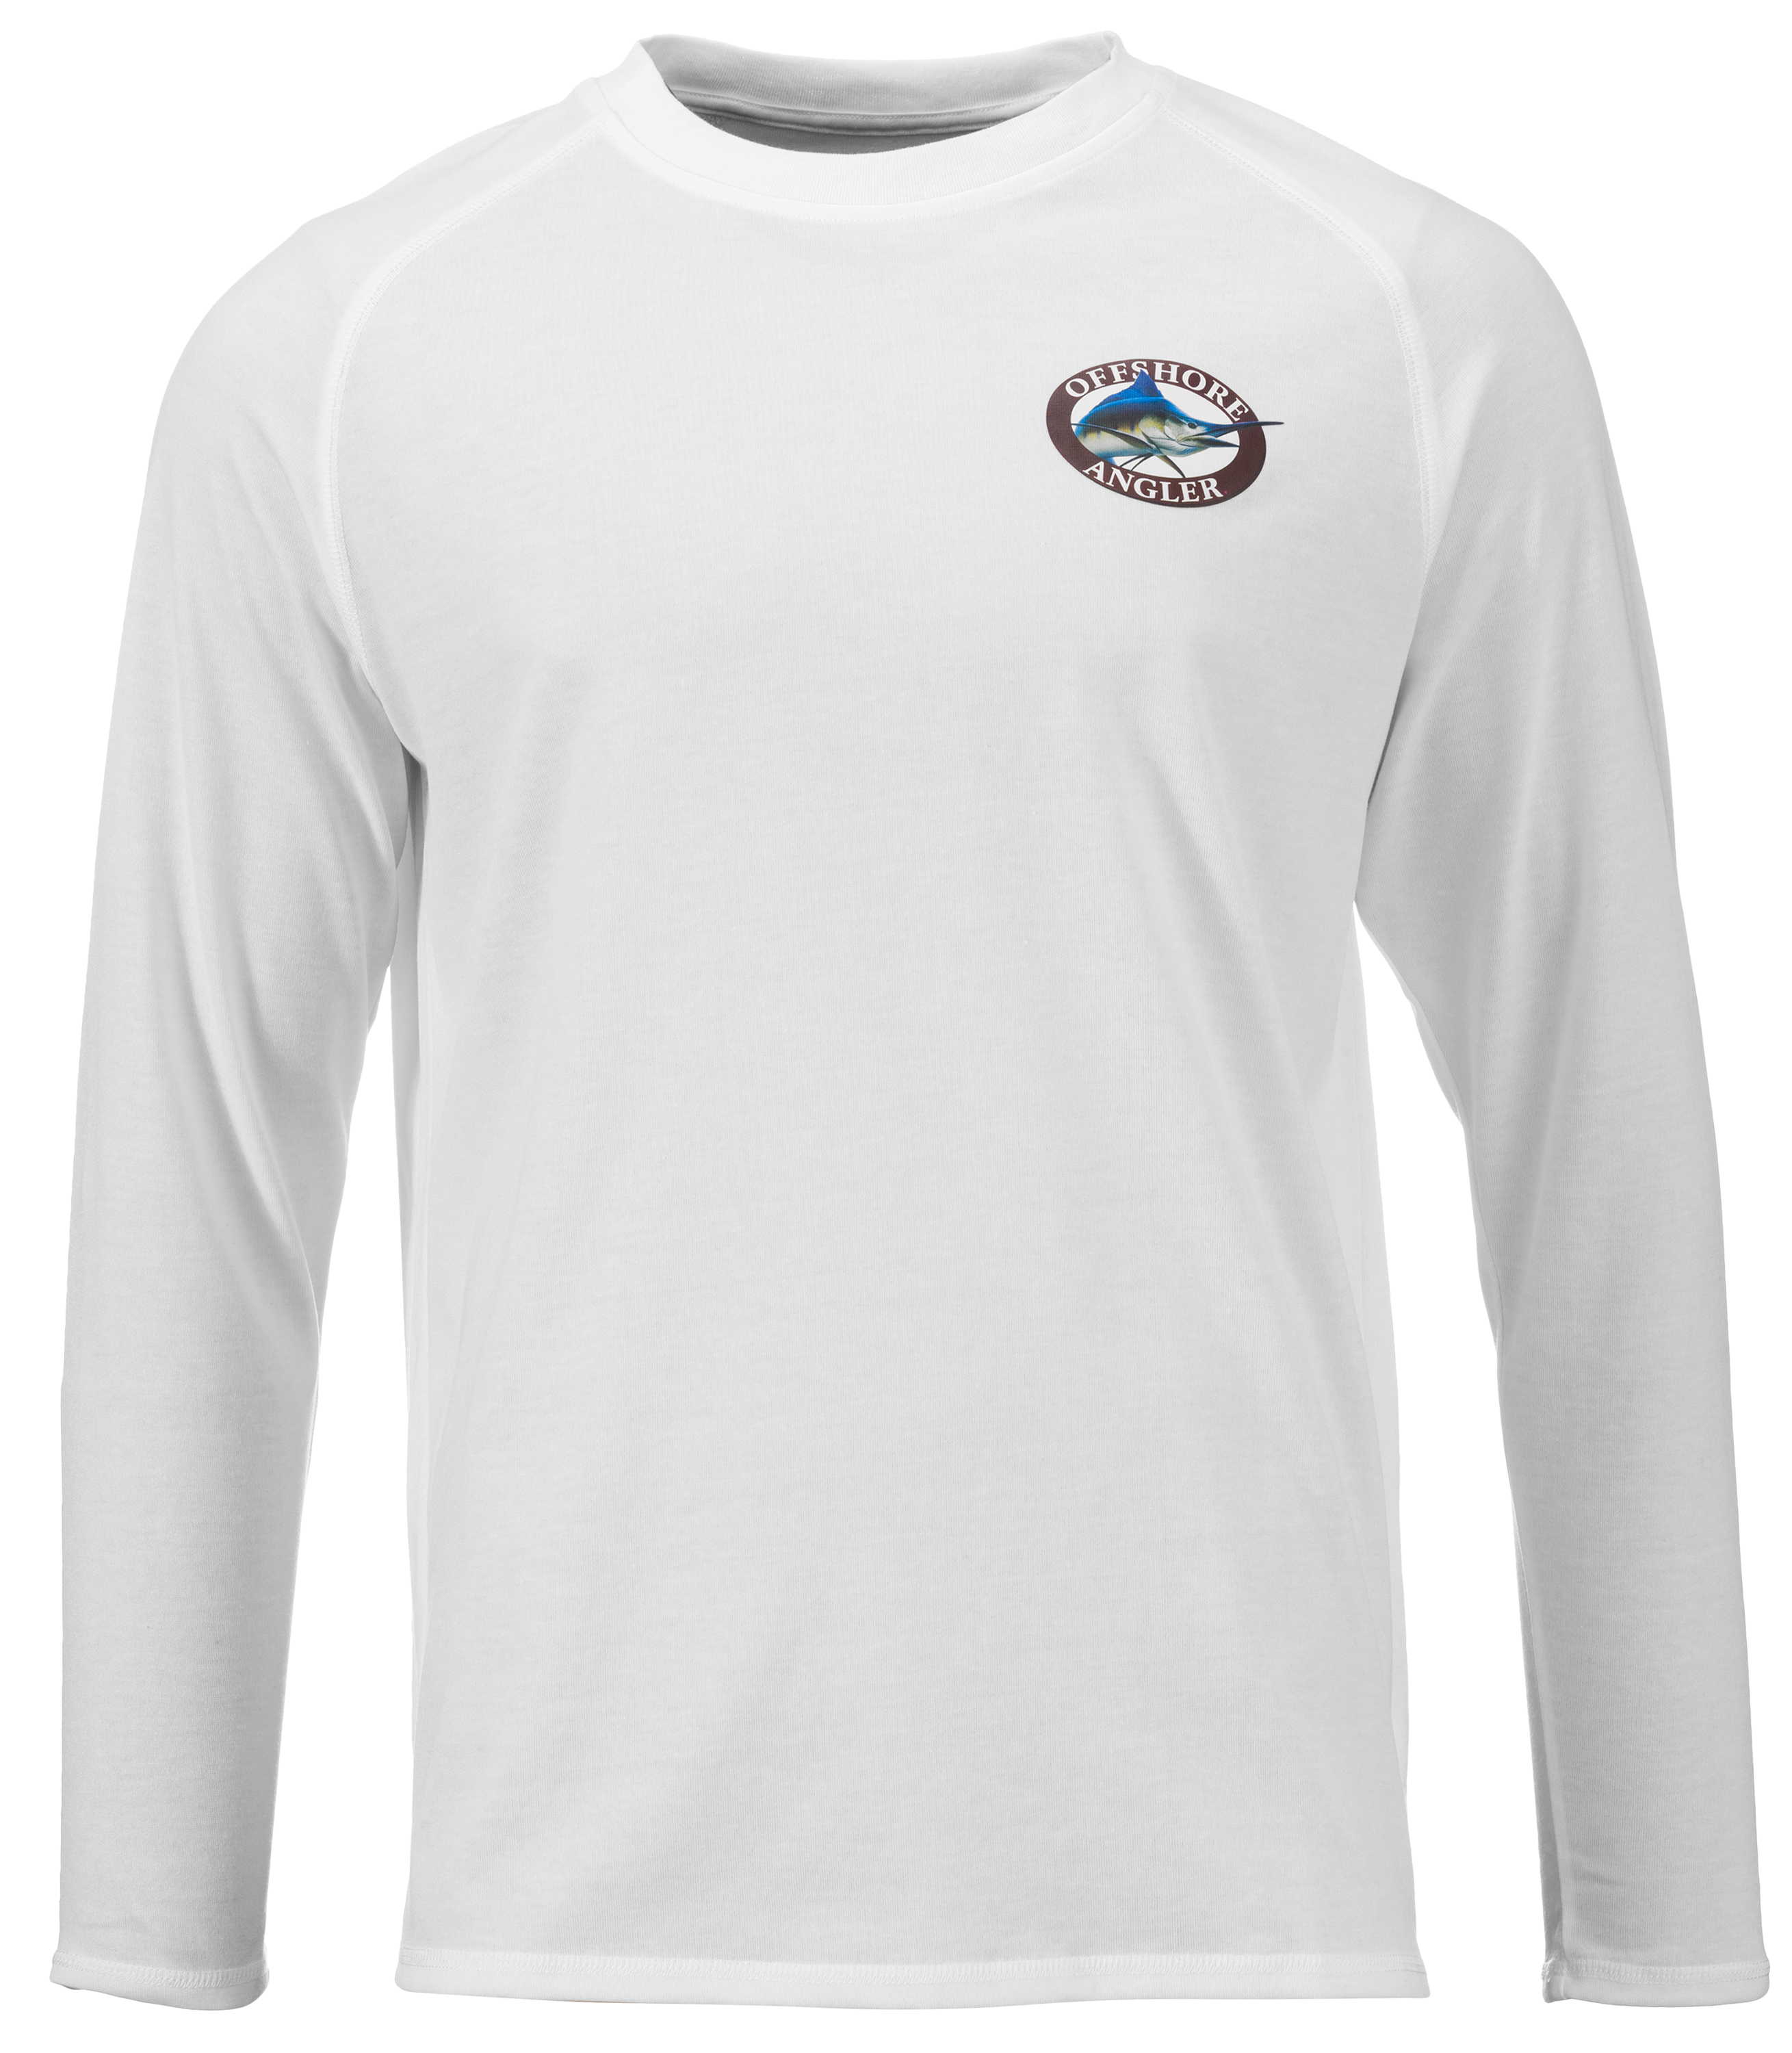 Offshore Angler Performance Long-Sleeve T-Shirt for Men